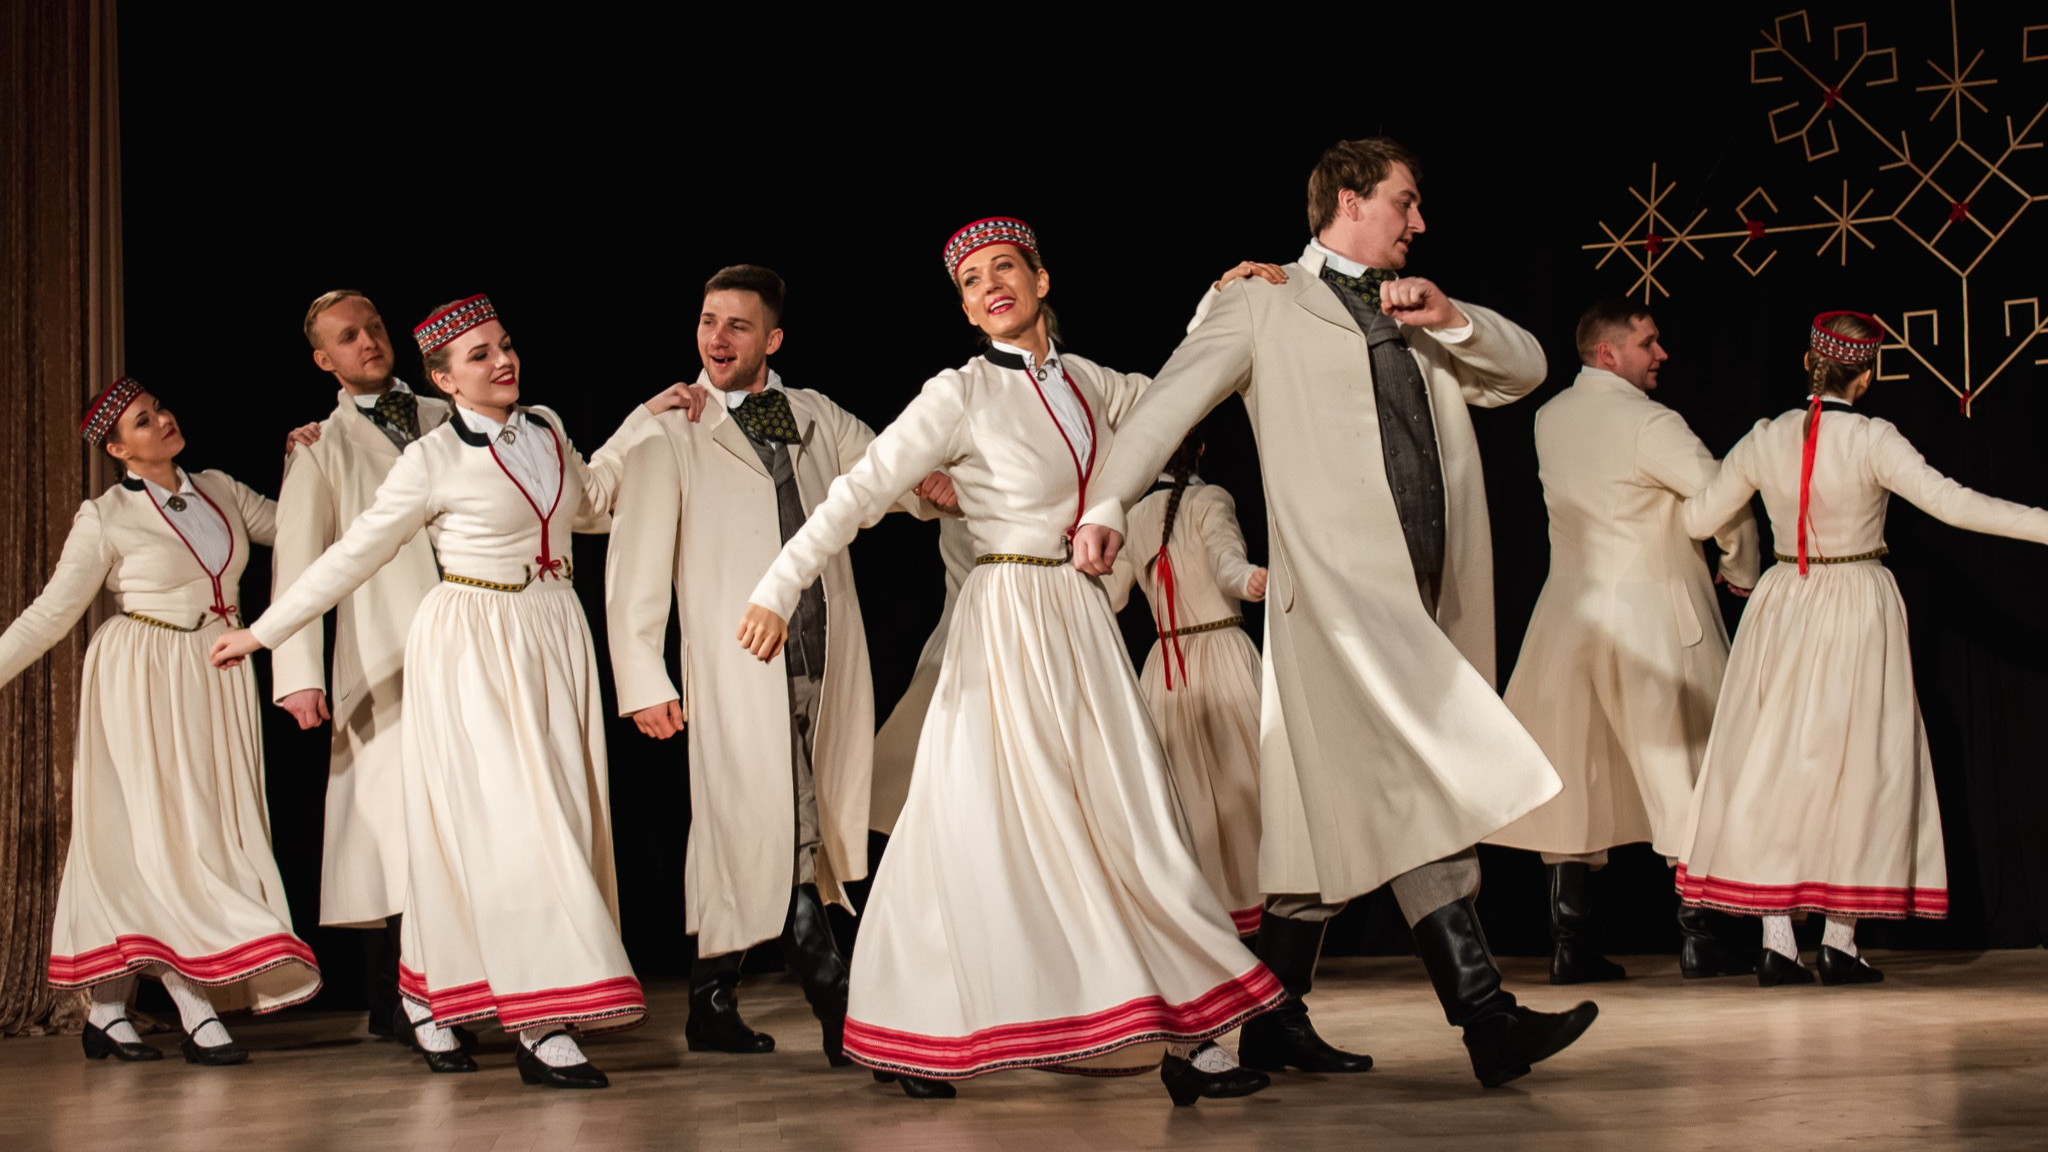 Rīgas Kultūras centrā “Iļģuciems” deju kolektīvs “Dejotprieks” krāšņā koncertā “Pilnos ziedos” svinēs 25 gadu jubileju